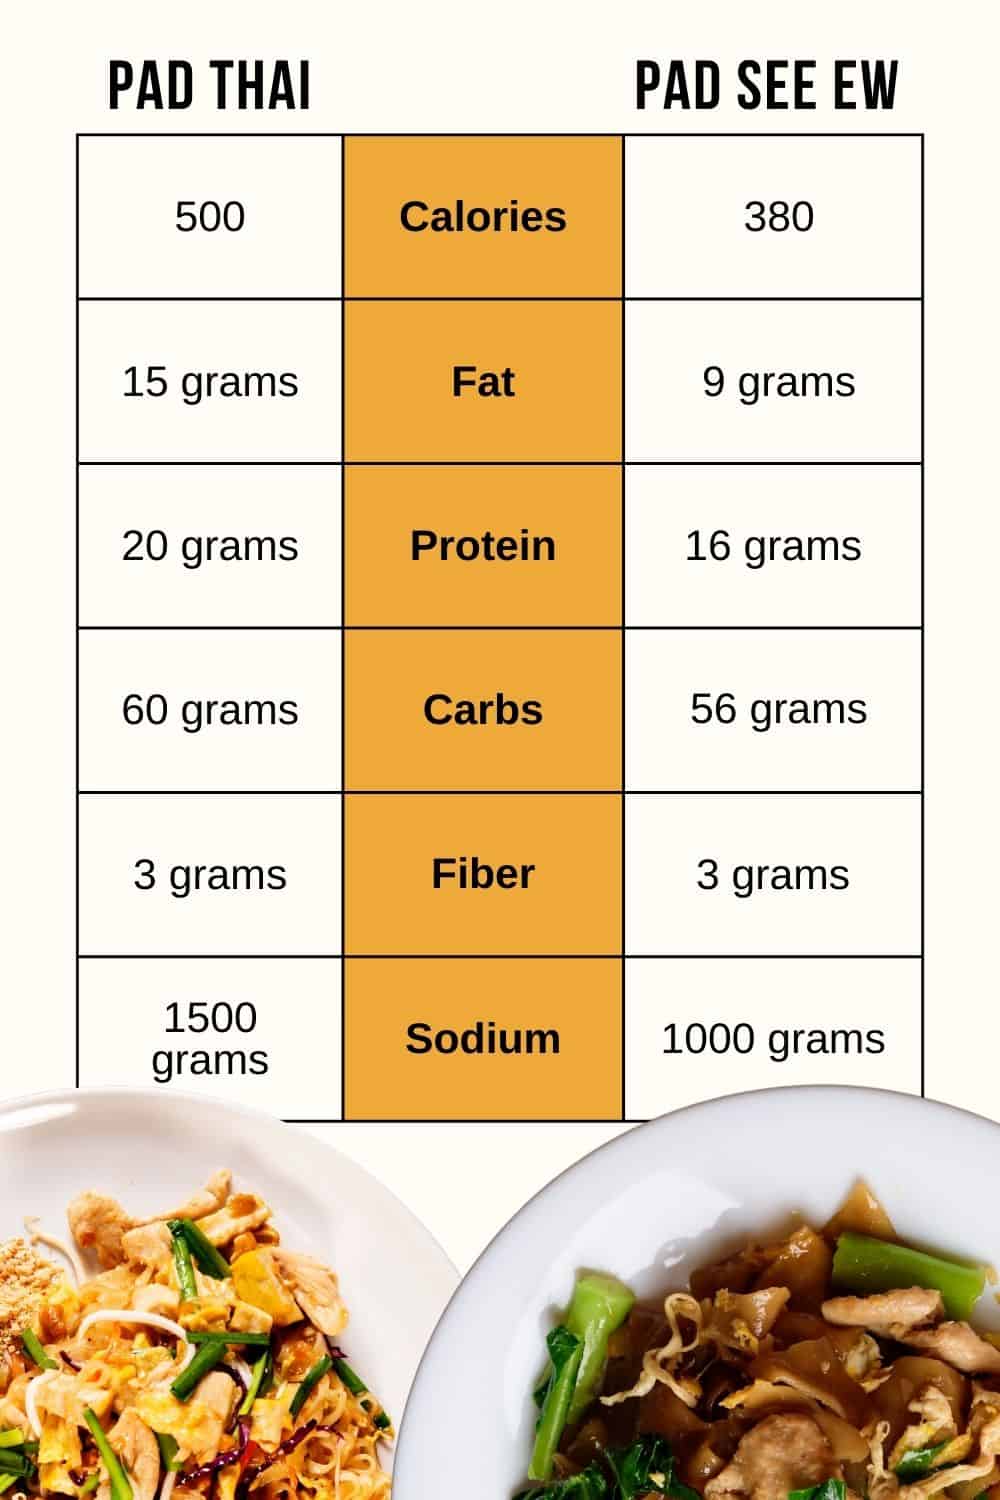 Pad see ew vs pad thai nutritional info